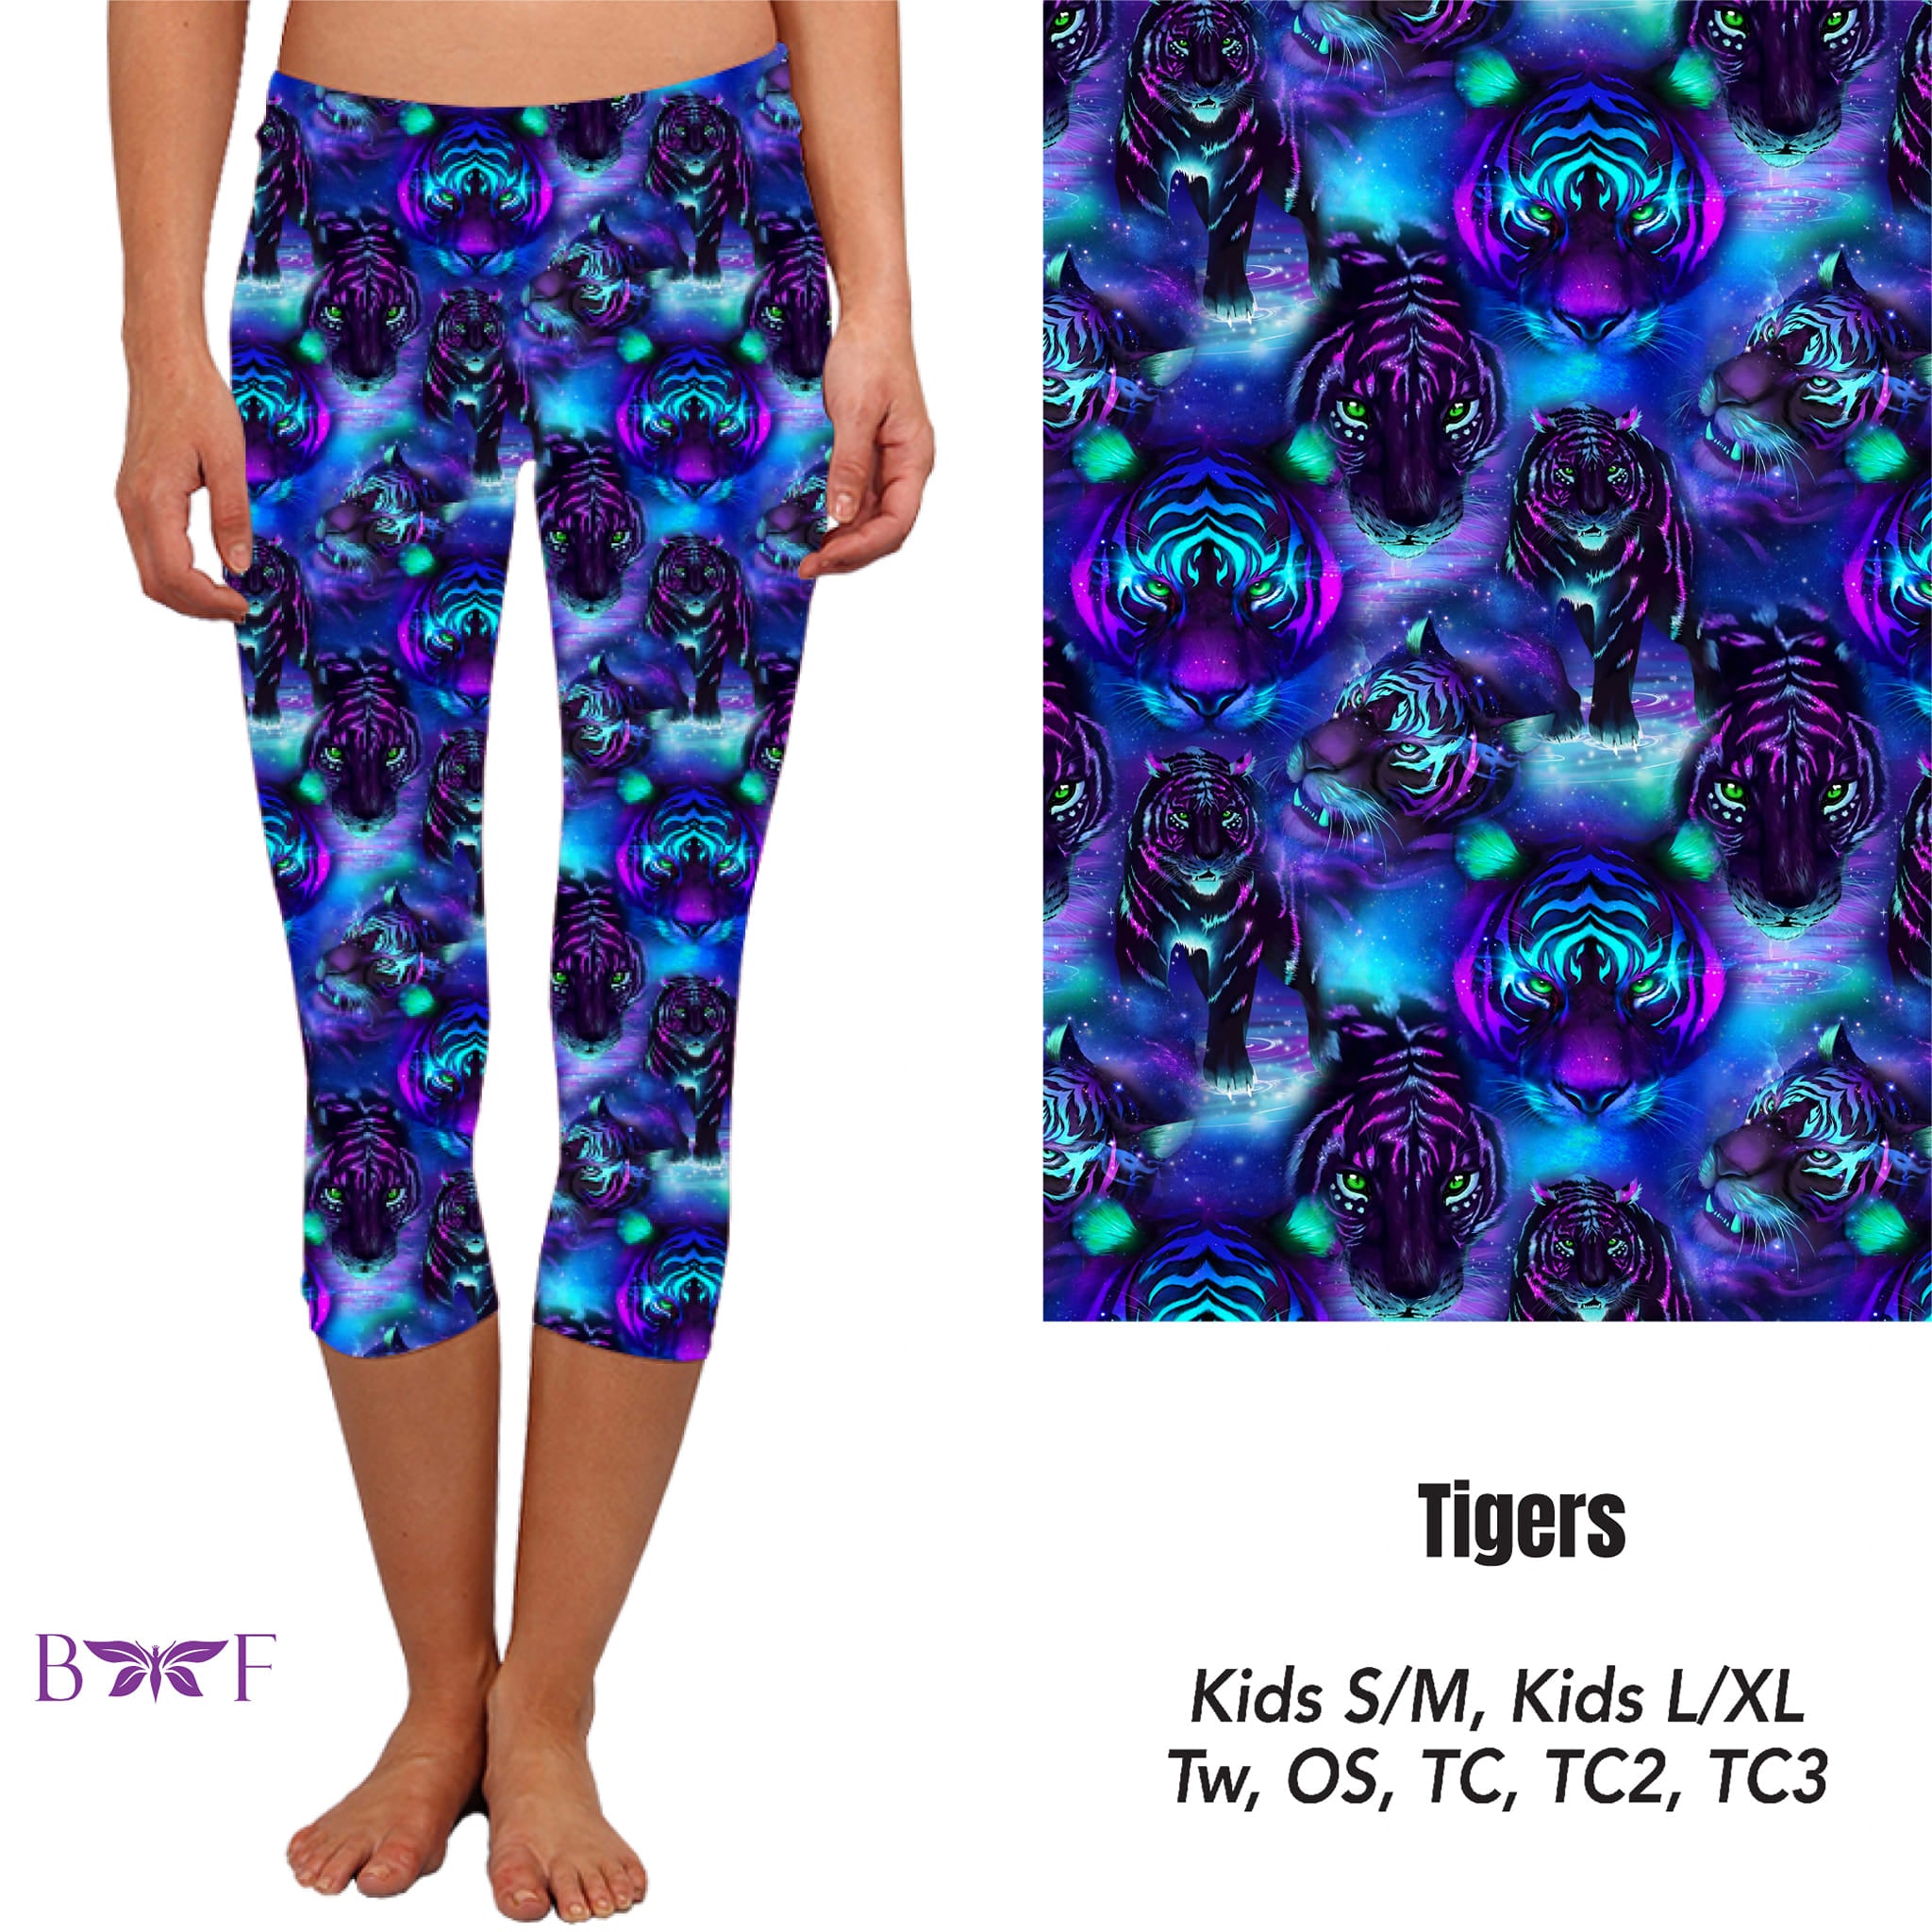 Tigers Leggings and Capris